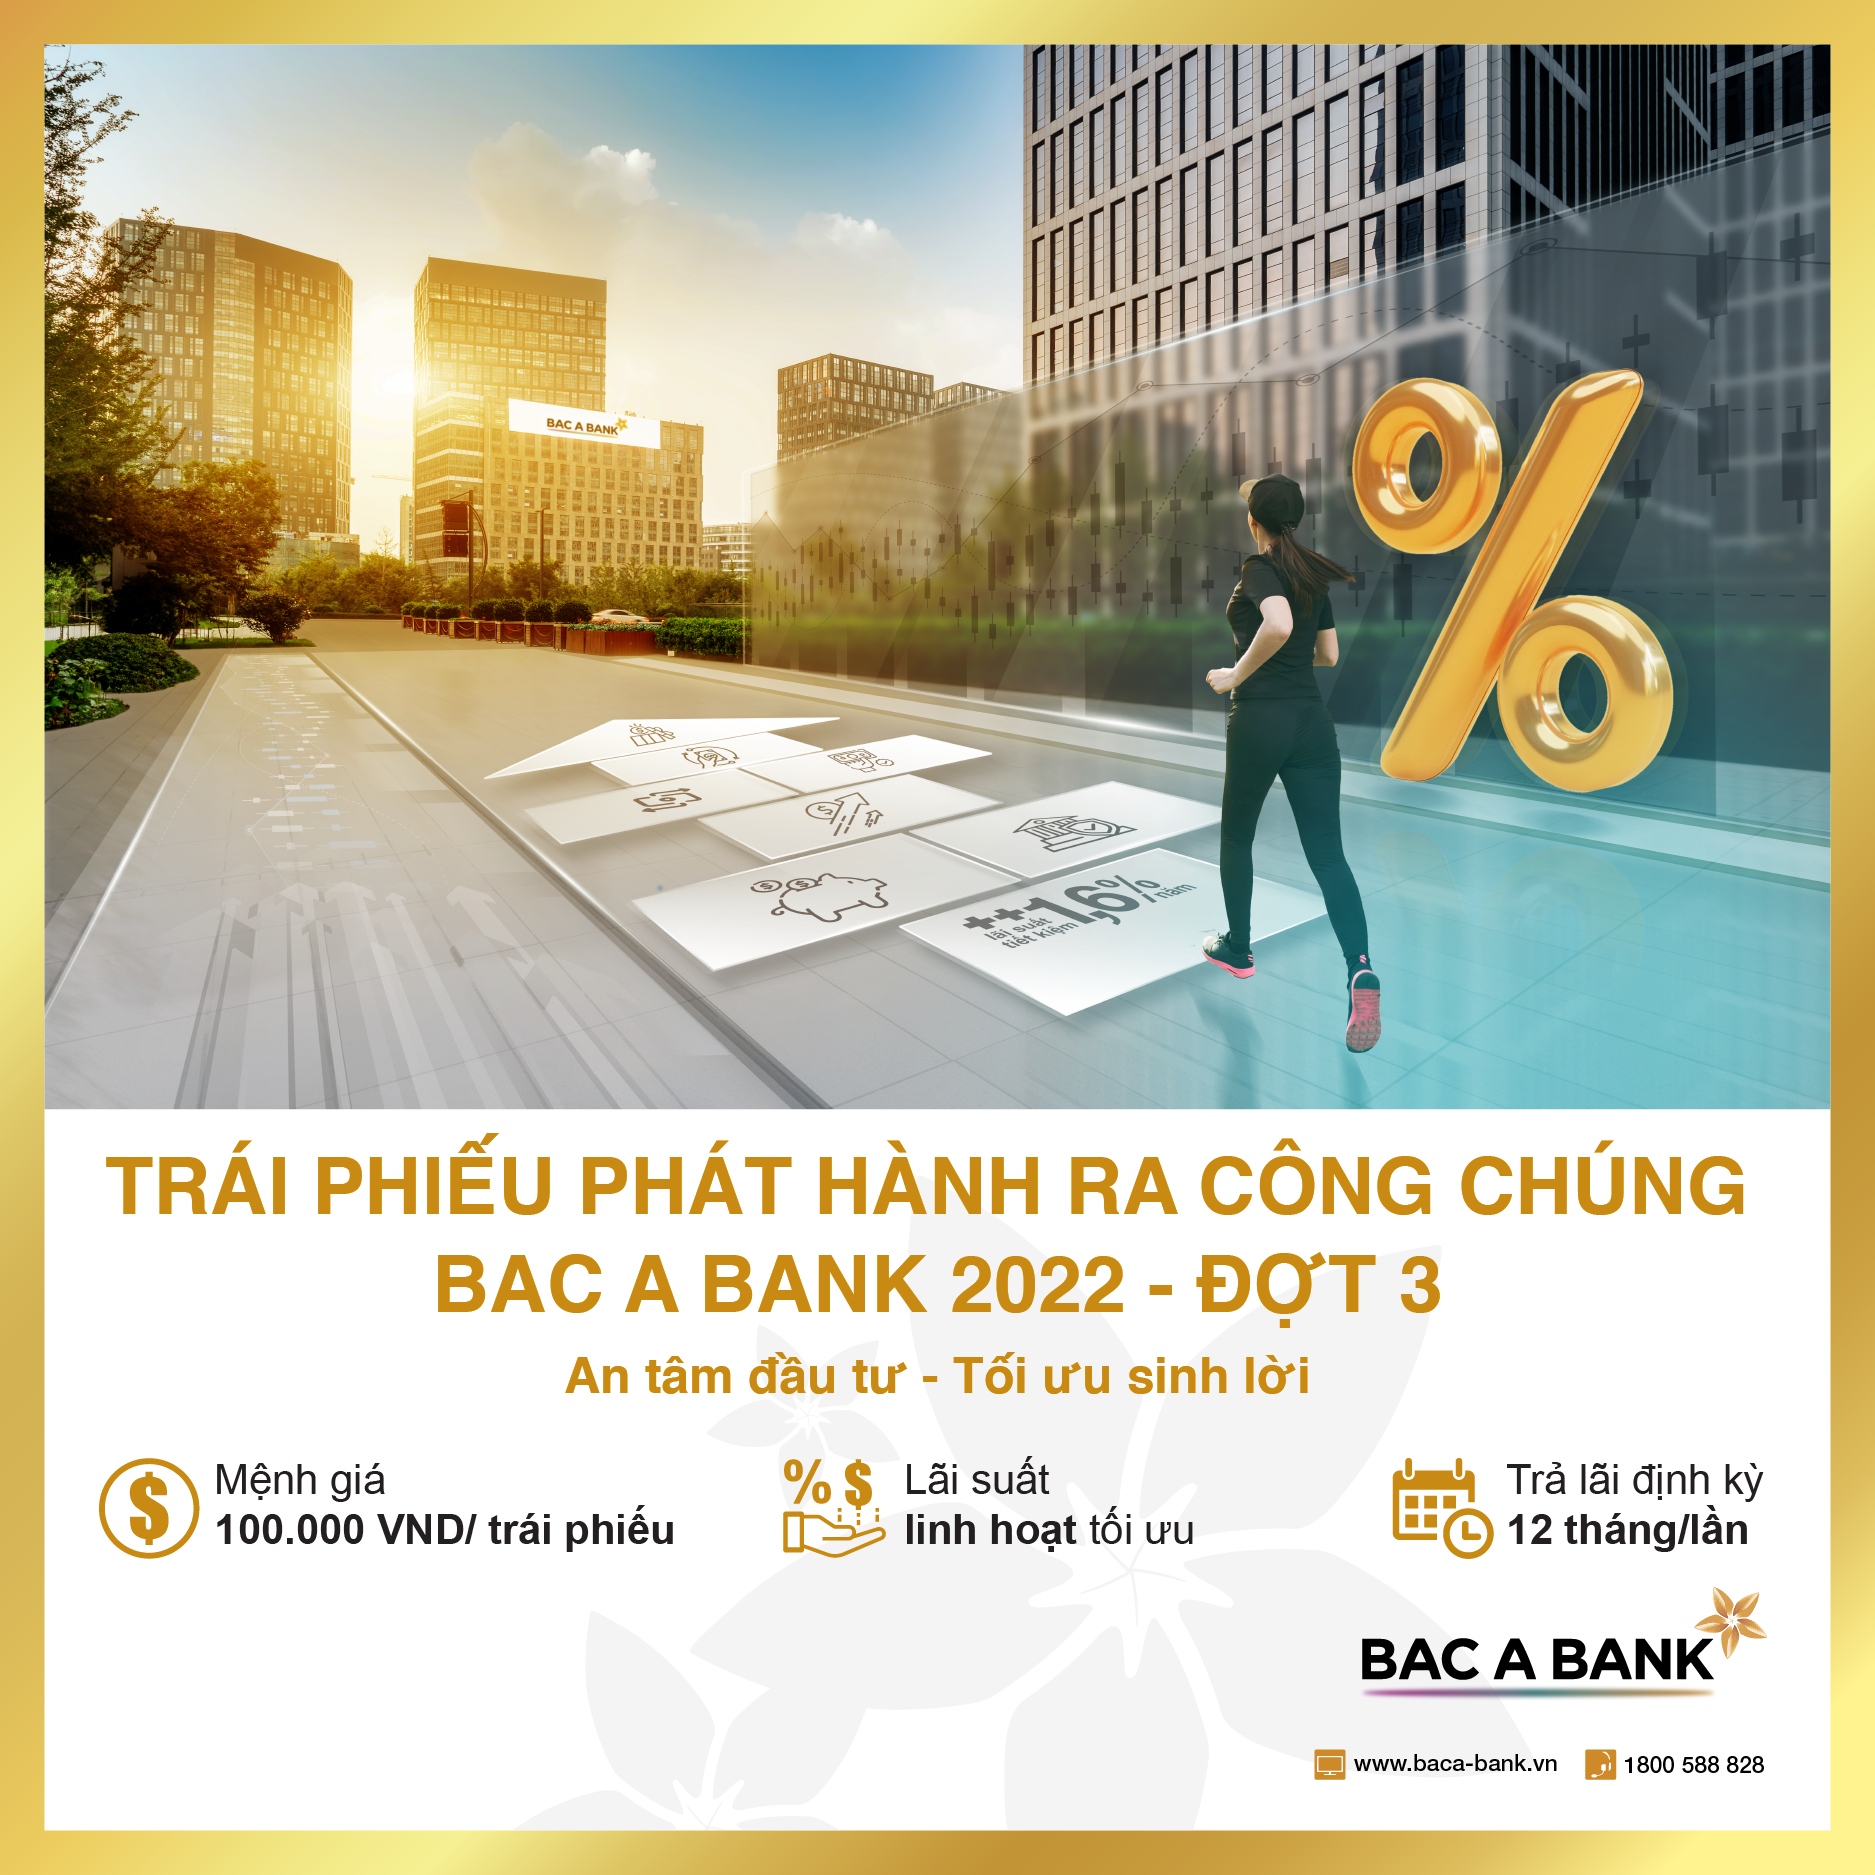 Bac A Bank phát hành hơn 3.000 tỉ đồng trái phiếu - 1